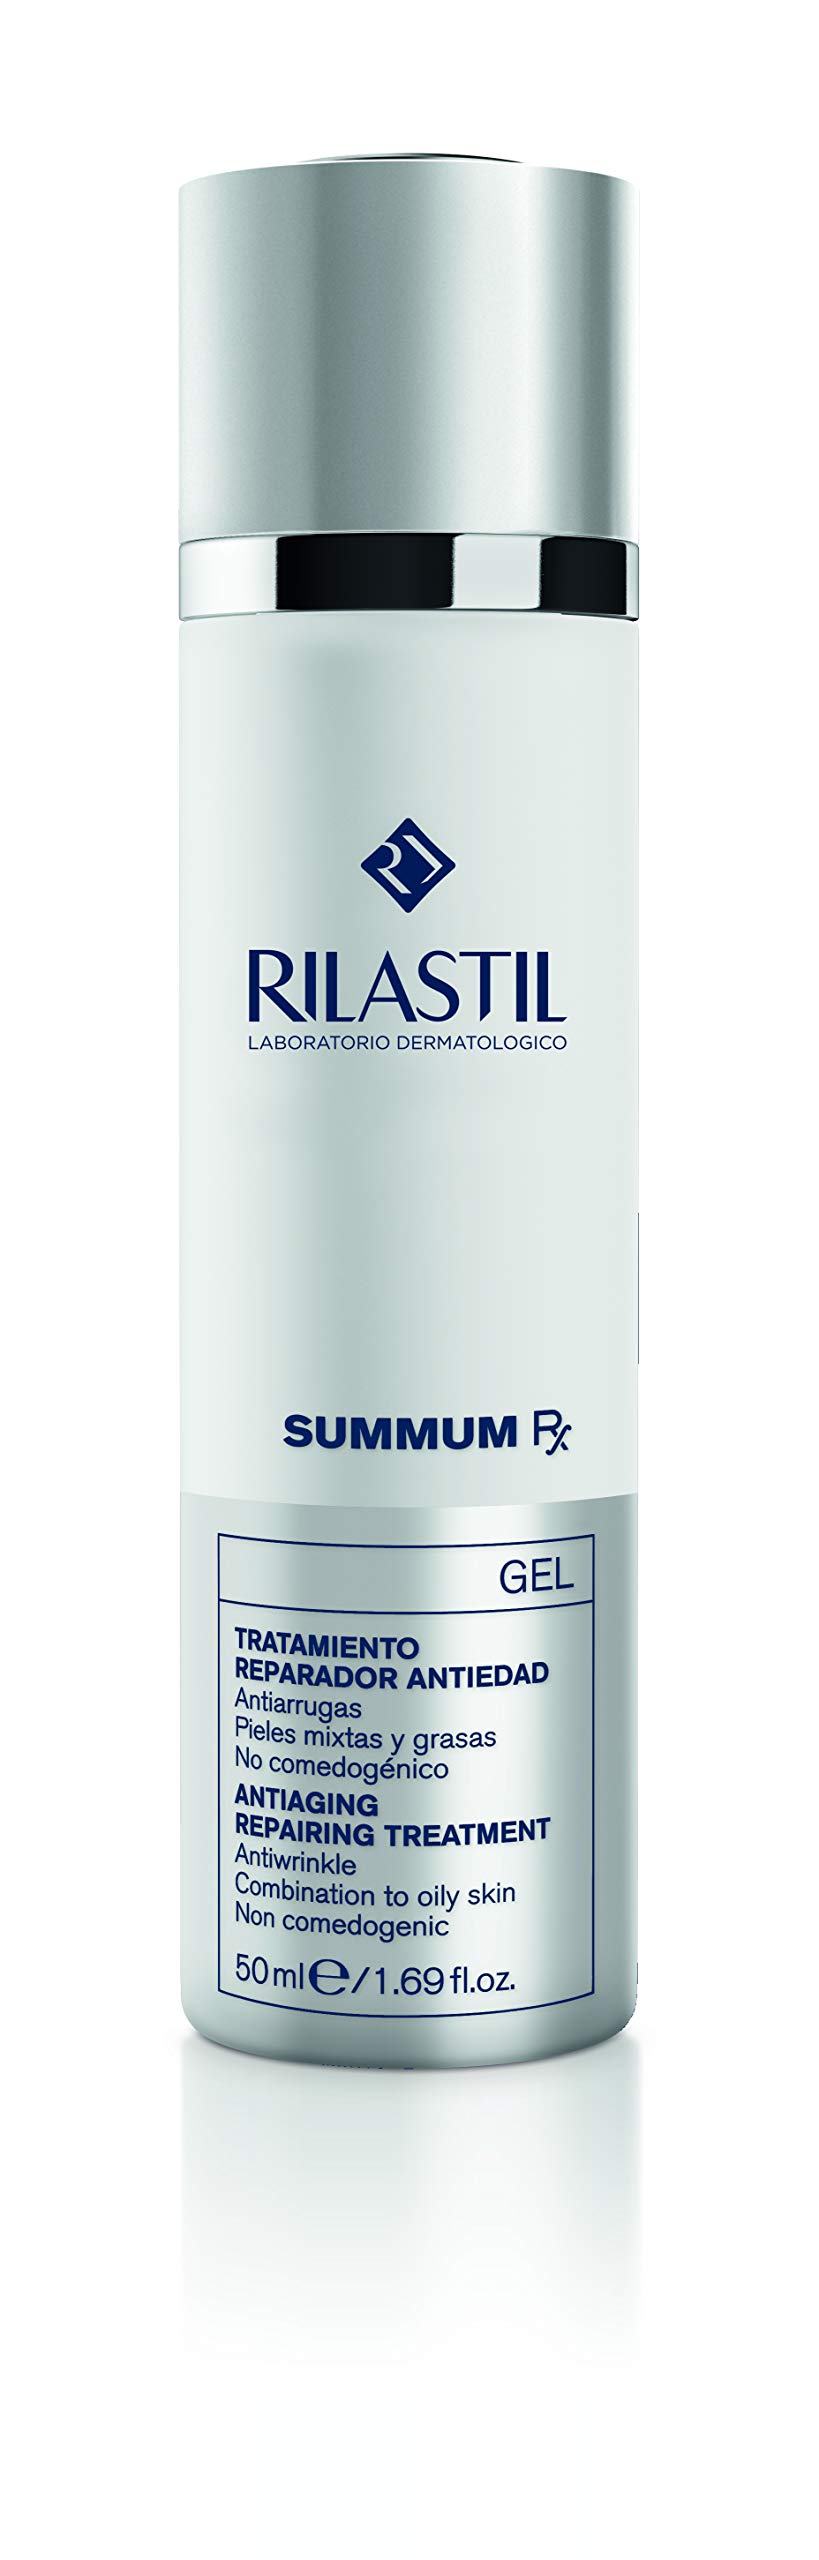 Rilastil Summum RX - Gel Reparador Antiedad para Pieles Mixtas y Grasas, 50 ml